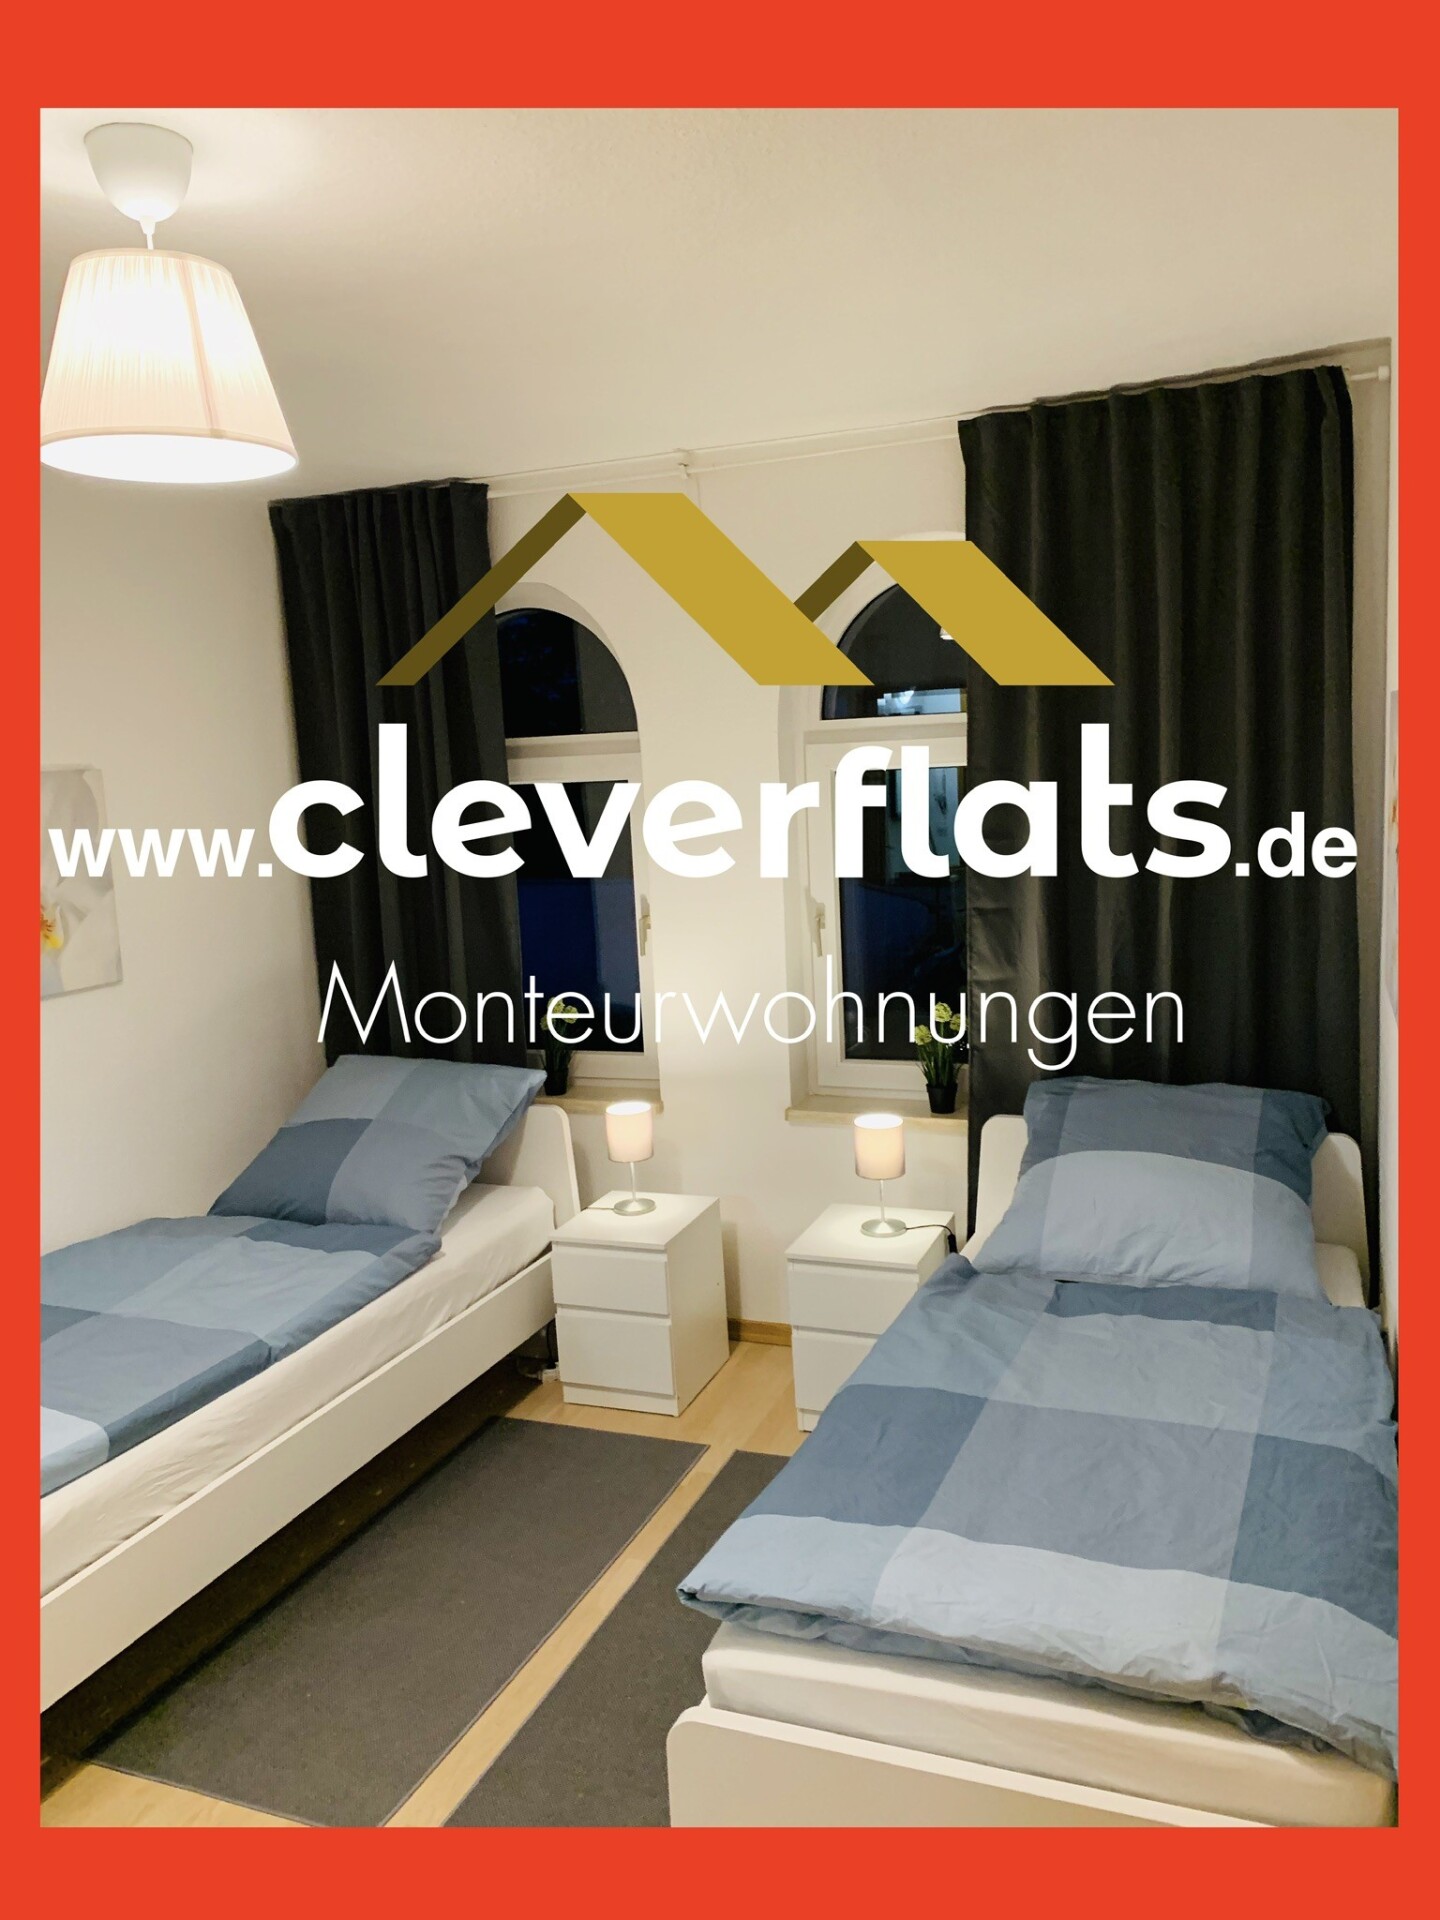 Cleverflats Nagelneue Monteurwohnungen in Zwickau Kristina Schweigert 08062 167532793163db79bb25ac8